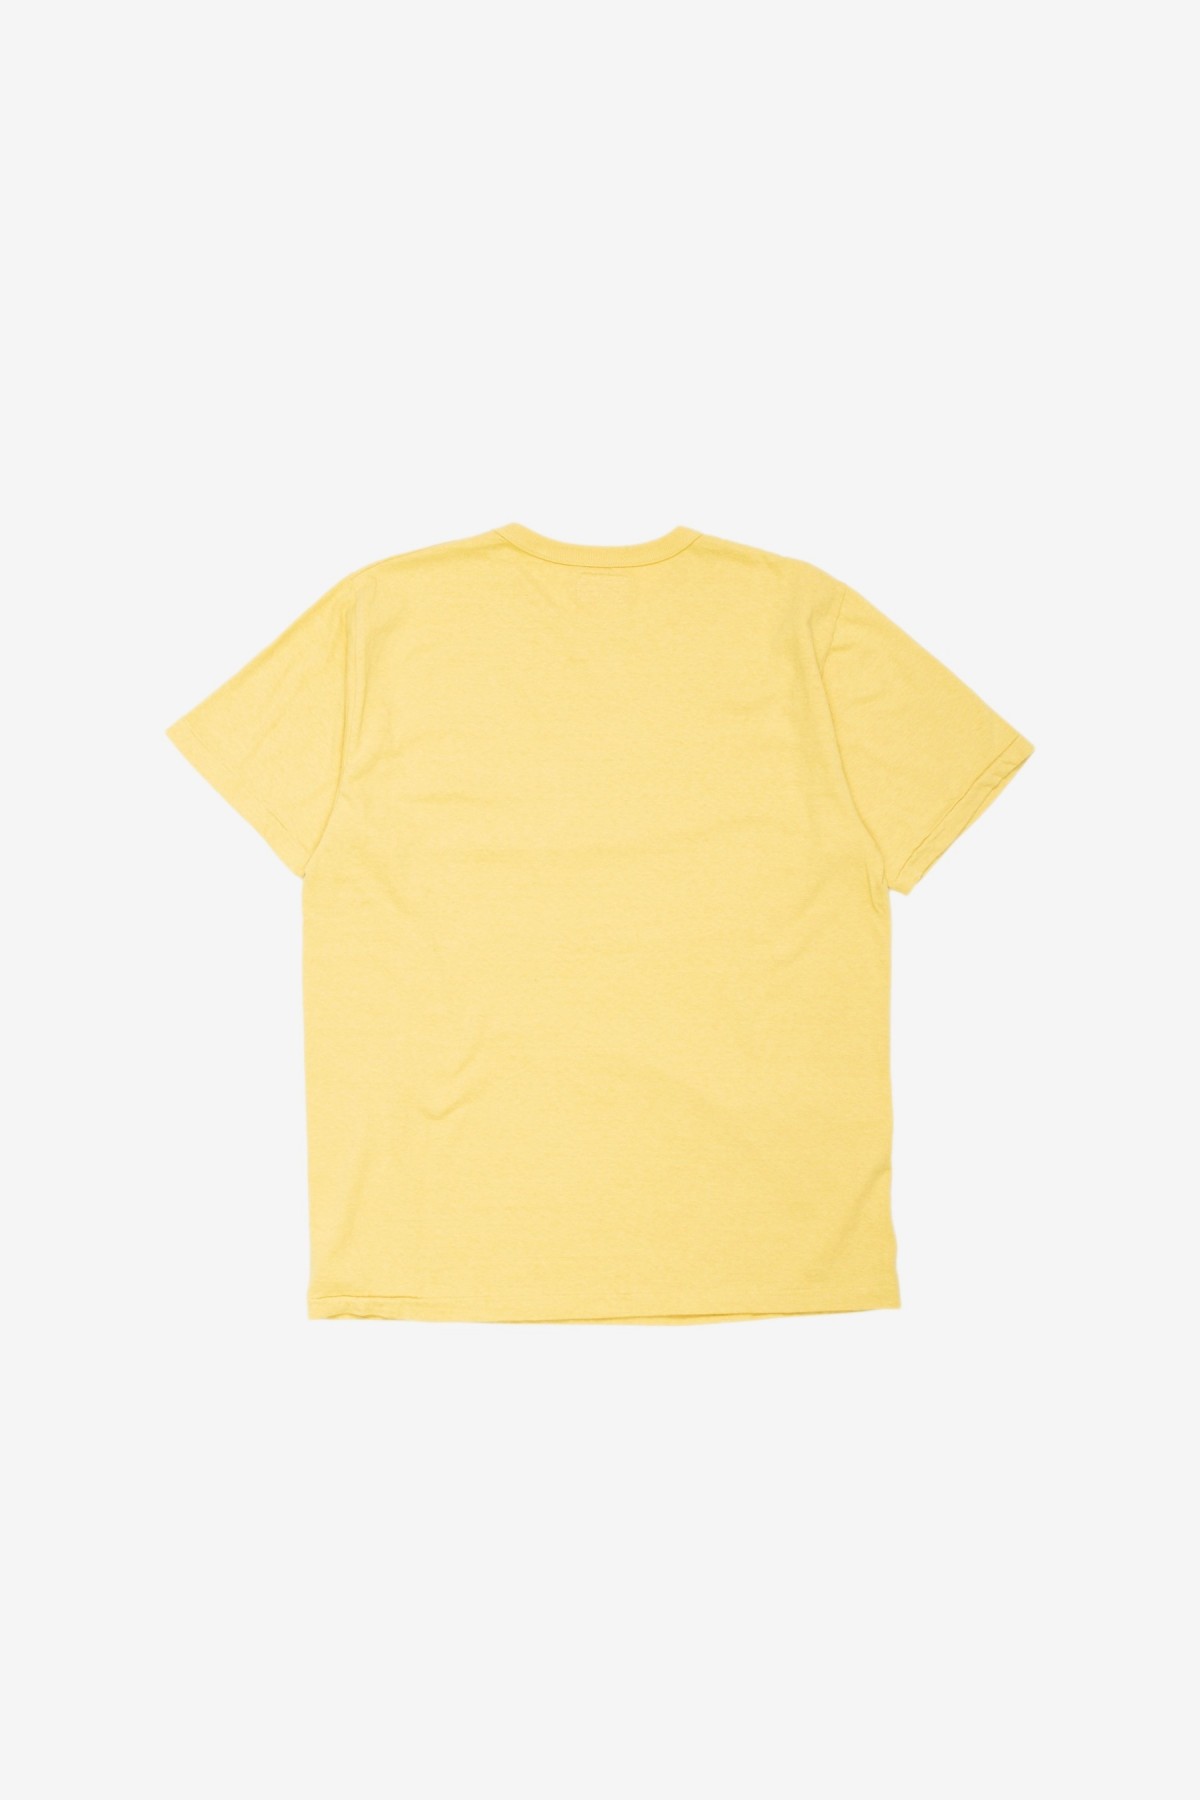 Sunray Sportswear Haleiwa Short Sleeve T-Shirt in Dusky Citron